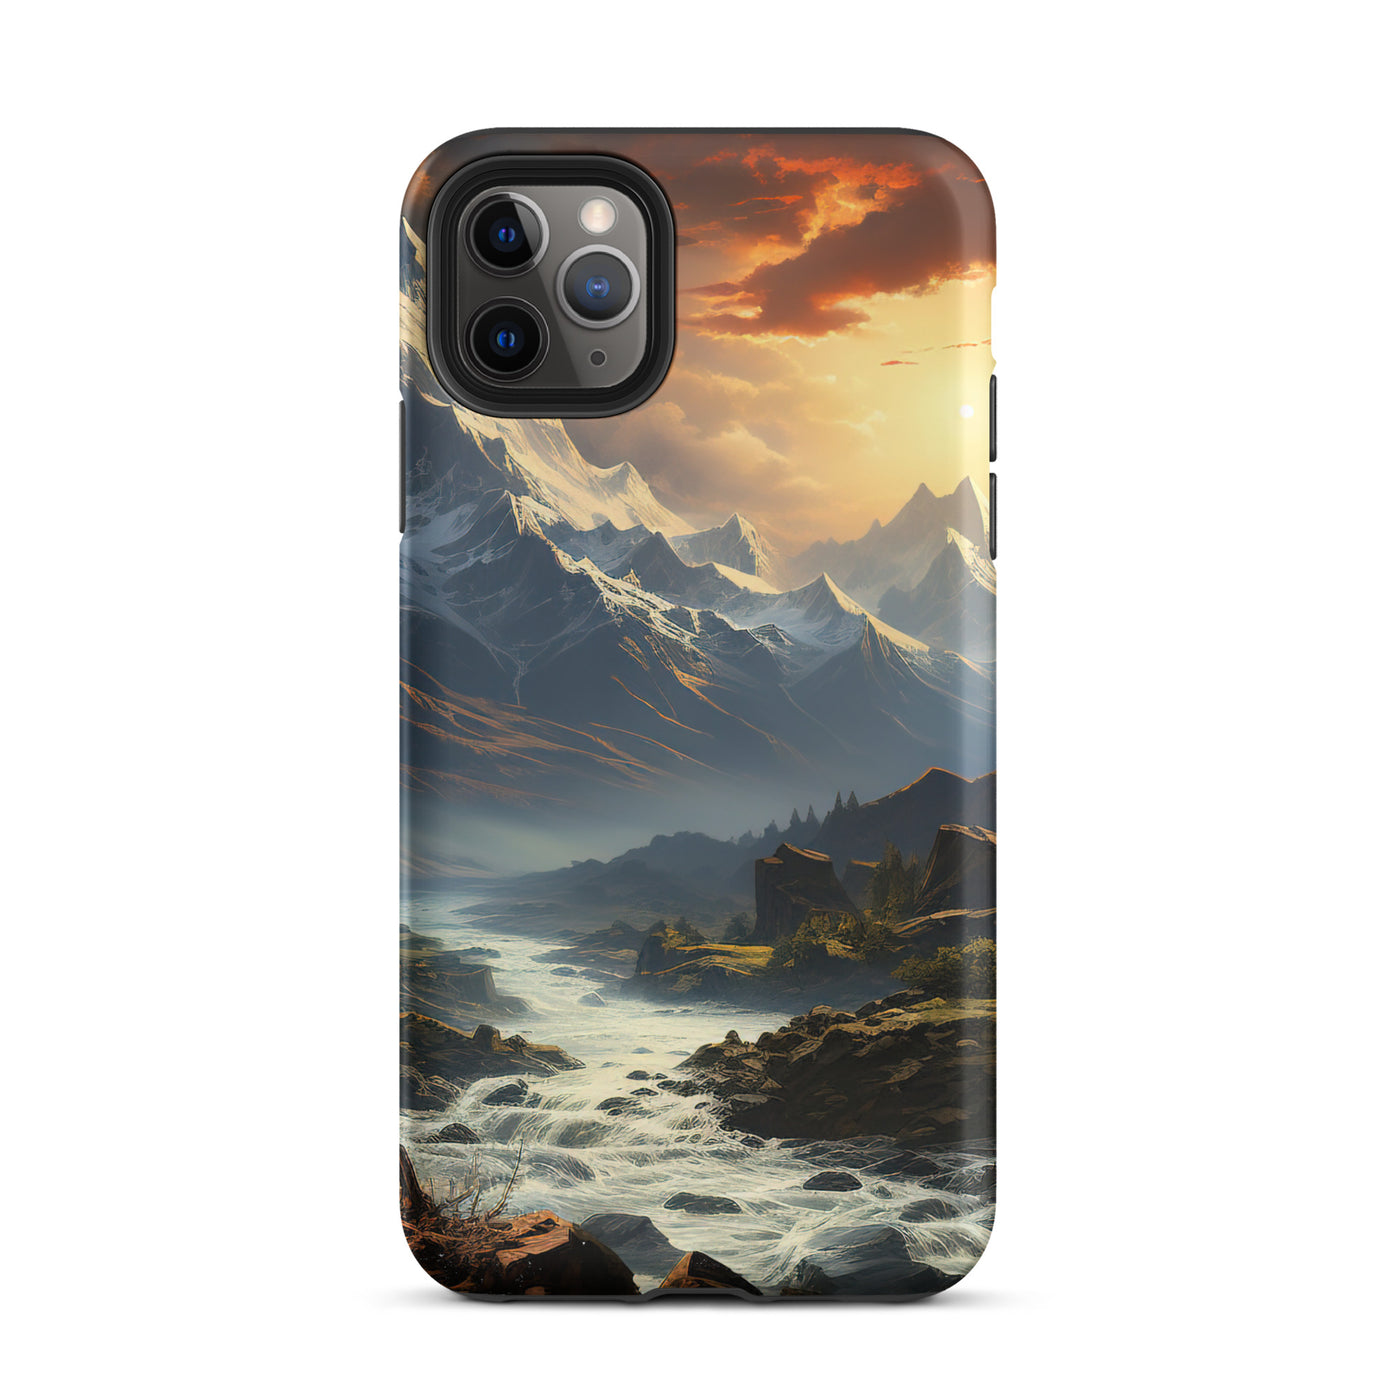 Berge, Sonne, steiniger Bach und Wolken - Epische Stimmung - iPhone Schutzhülle (robust) berge xxx iPhone 11 Pro Max